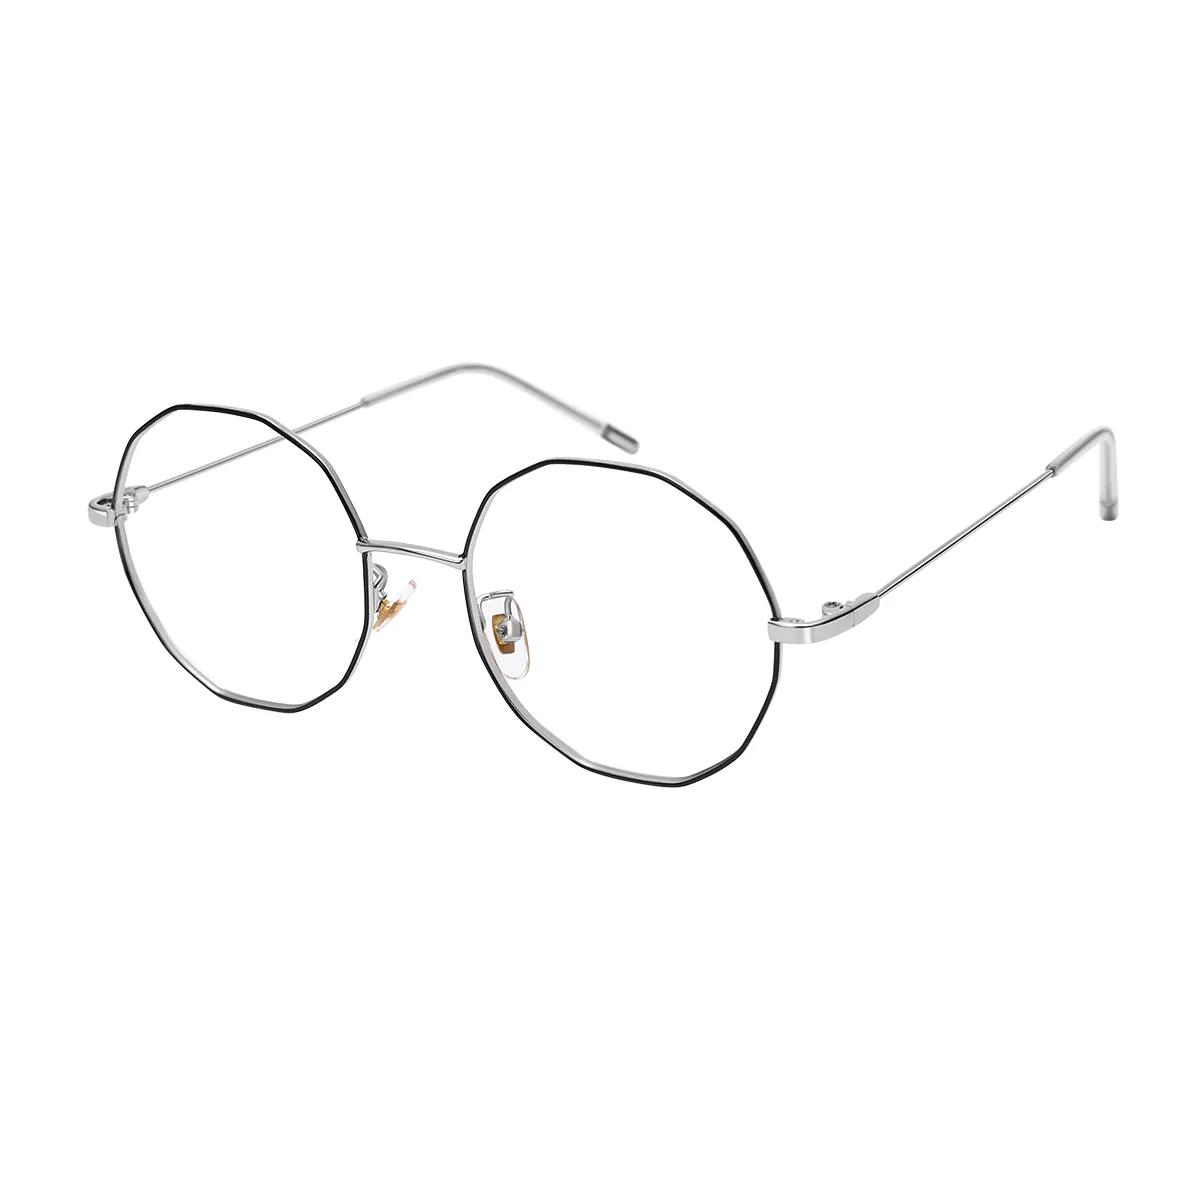 Billie - Geometric Black-silver Glasses for Women